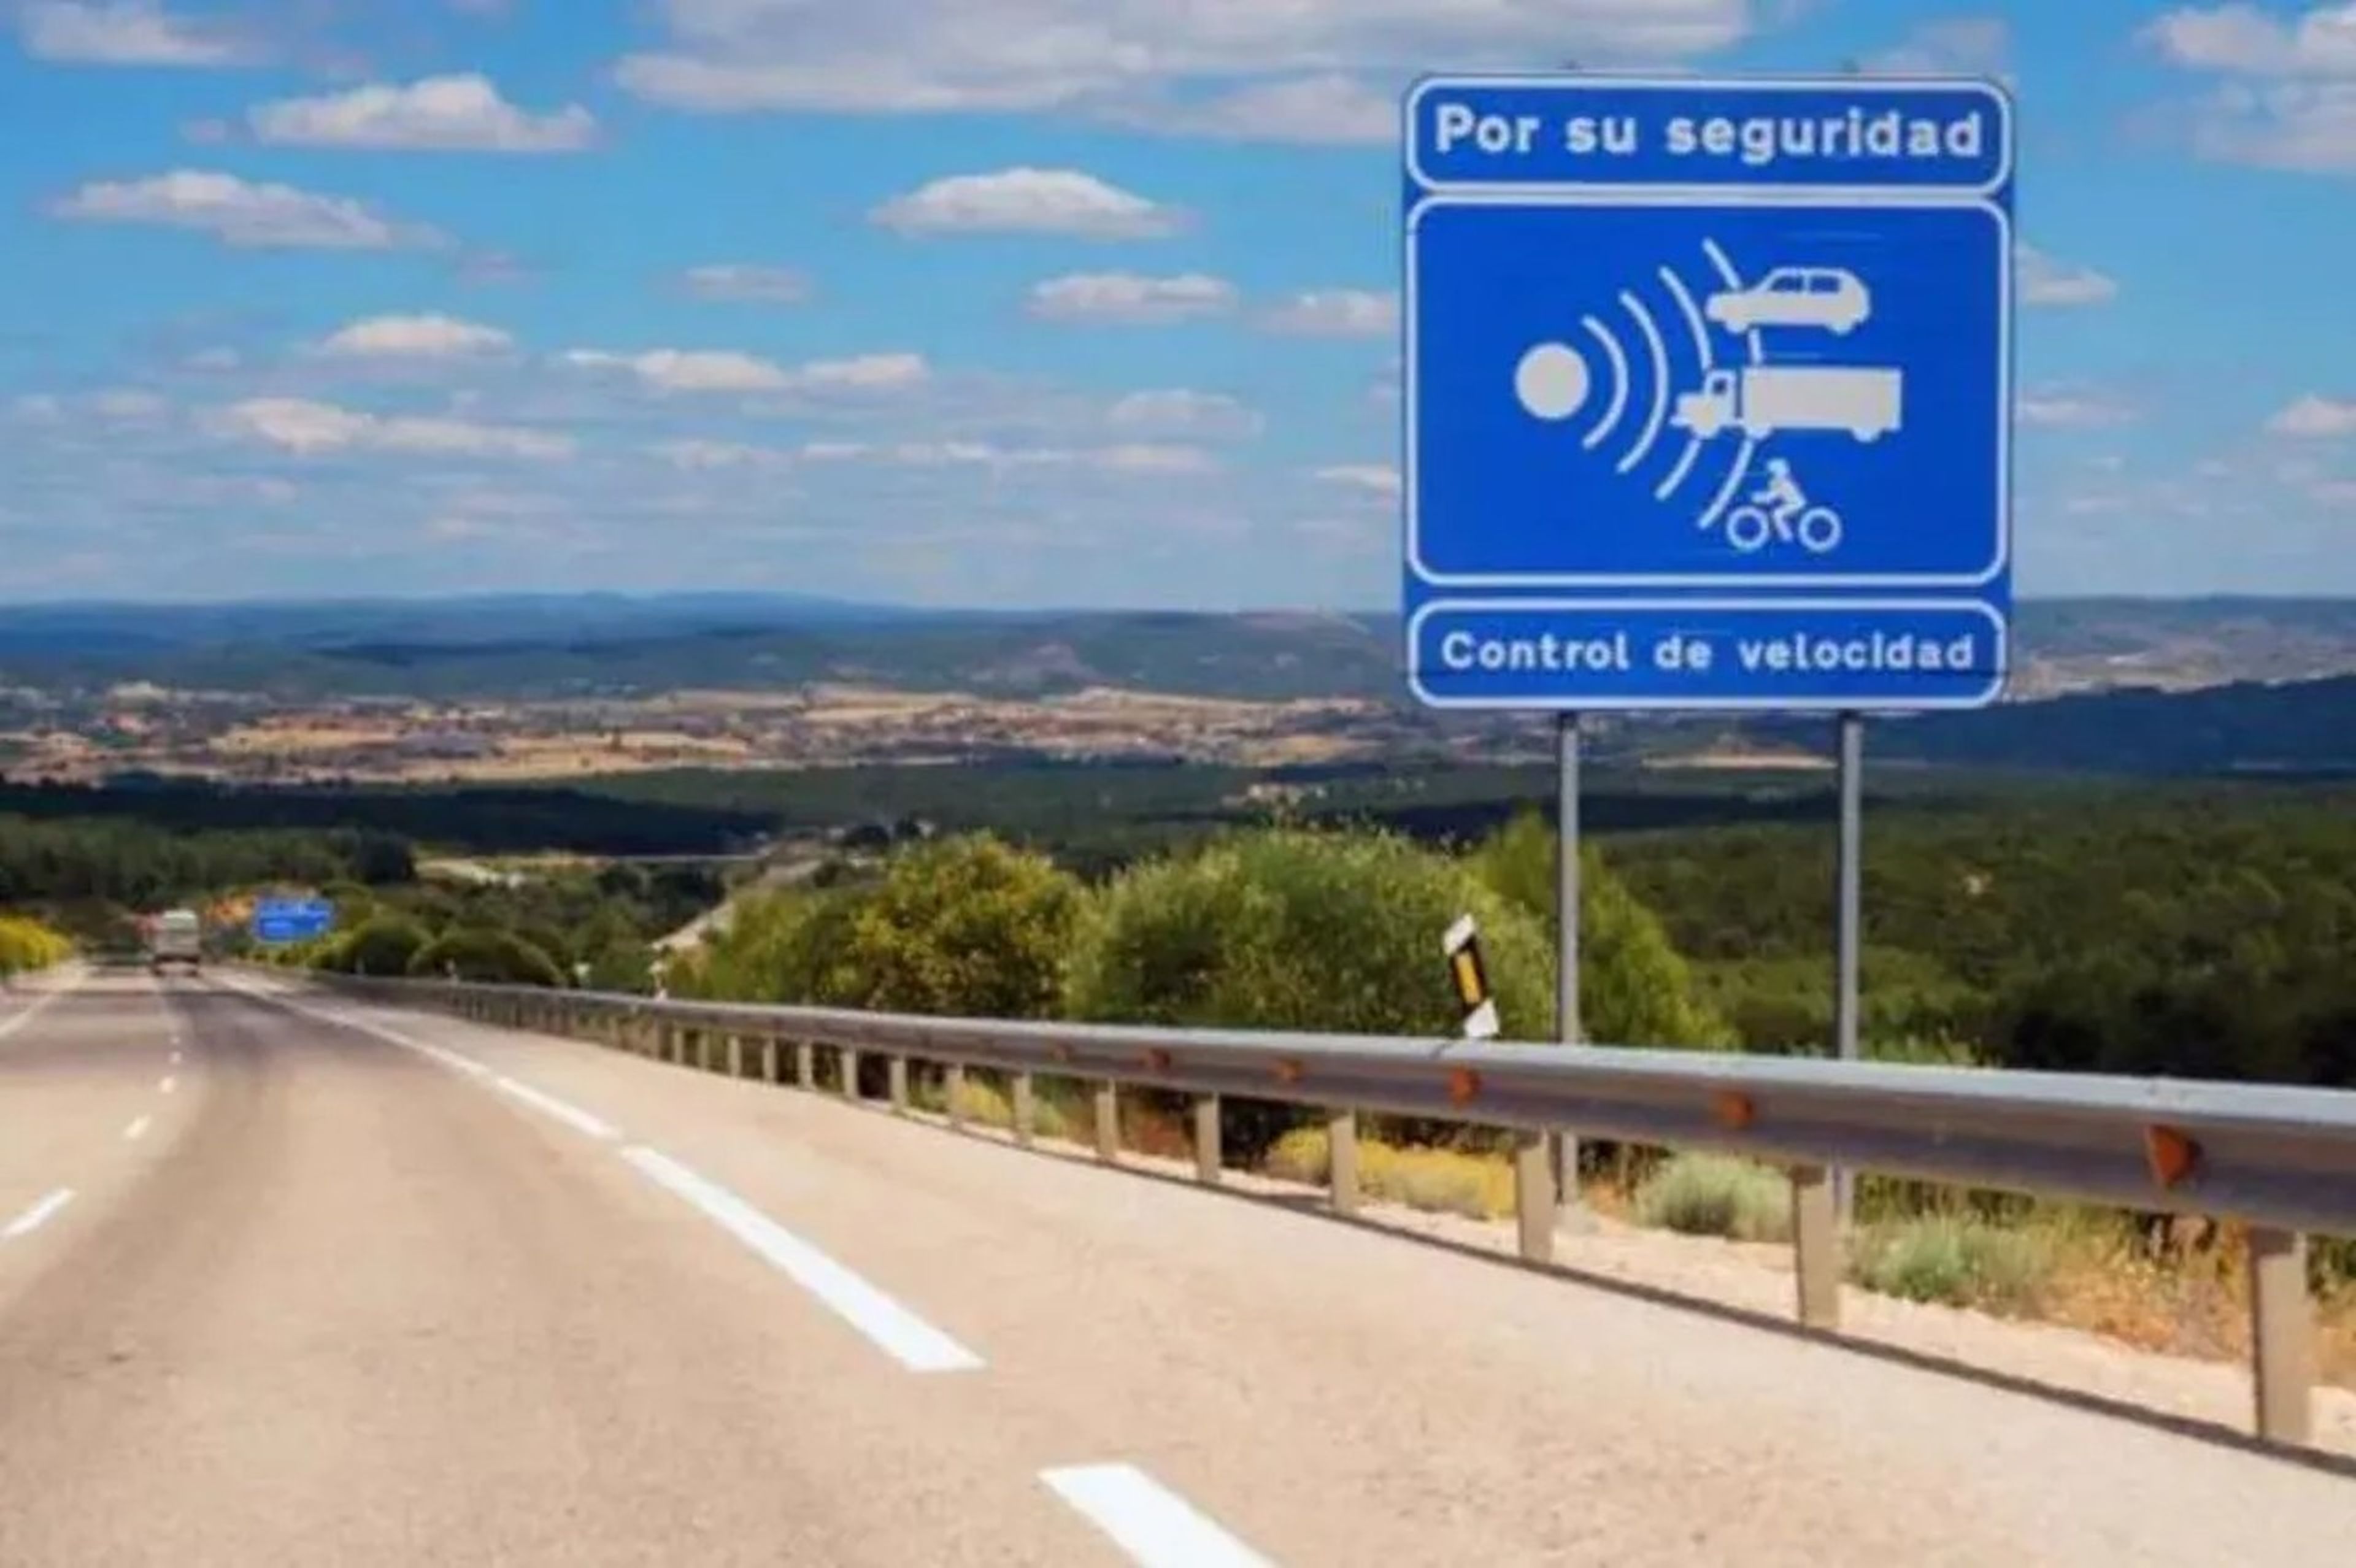 Aumenta el número de radares en España